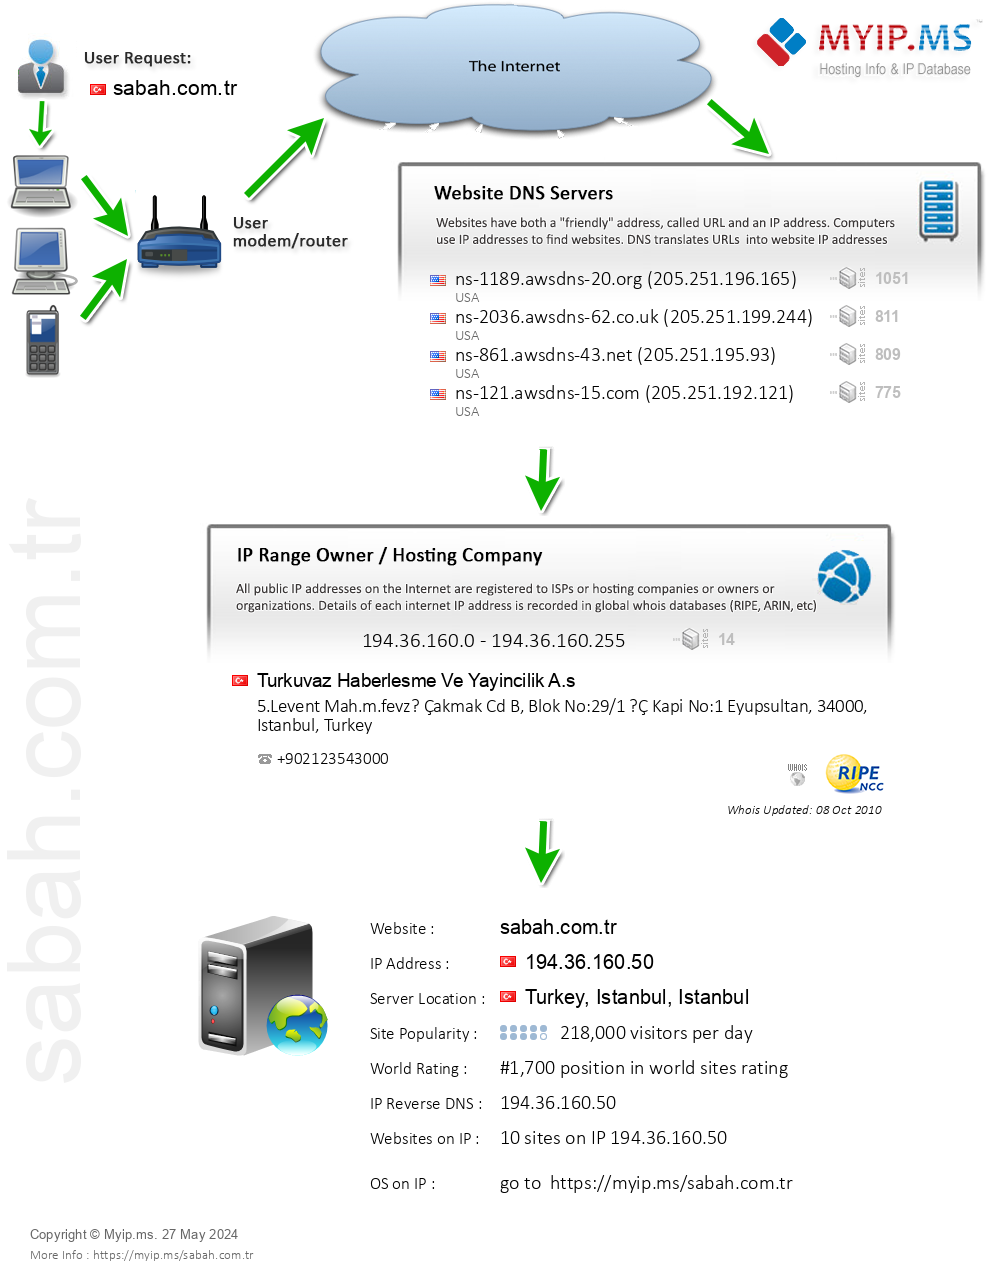 Sabah.com.tr - Website Hosting Visual IP Diagram